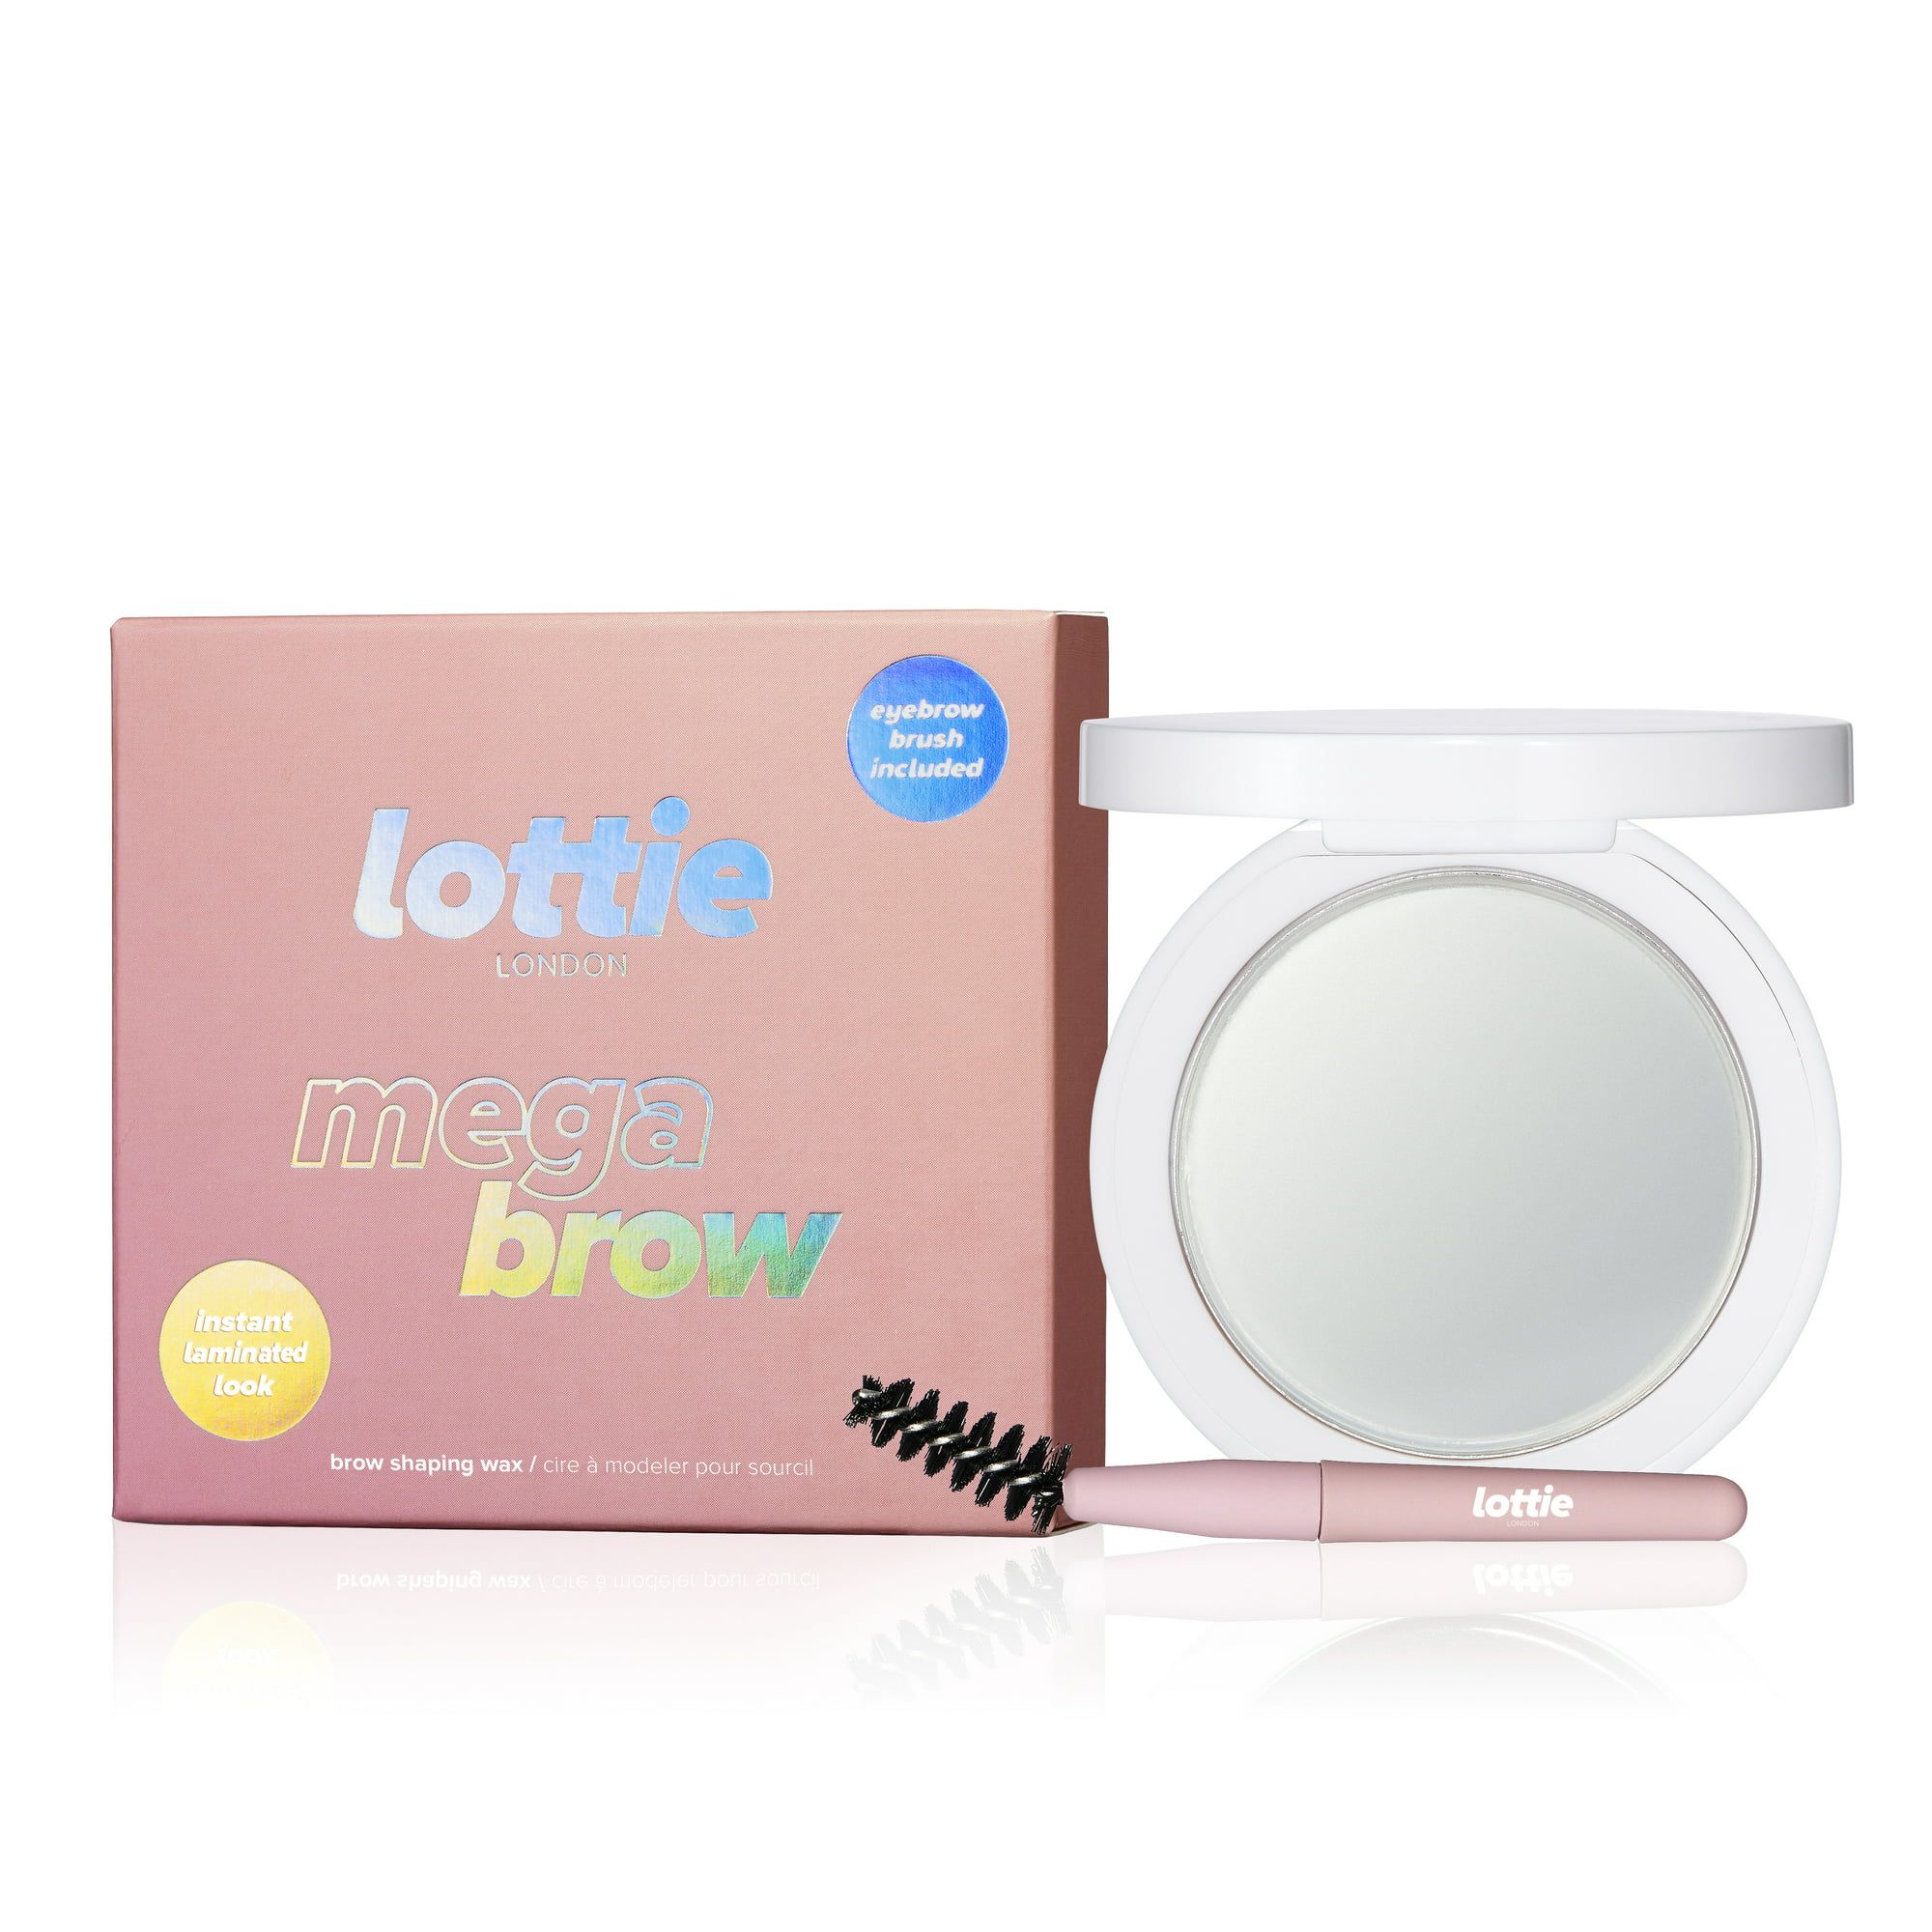 Lottie London Mega Brow Wax & Brush Set, Clear | Walmart (US)